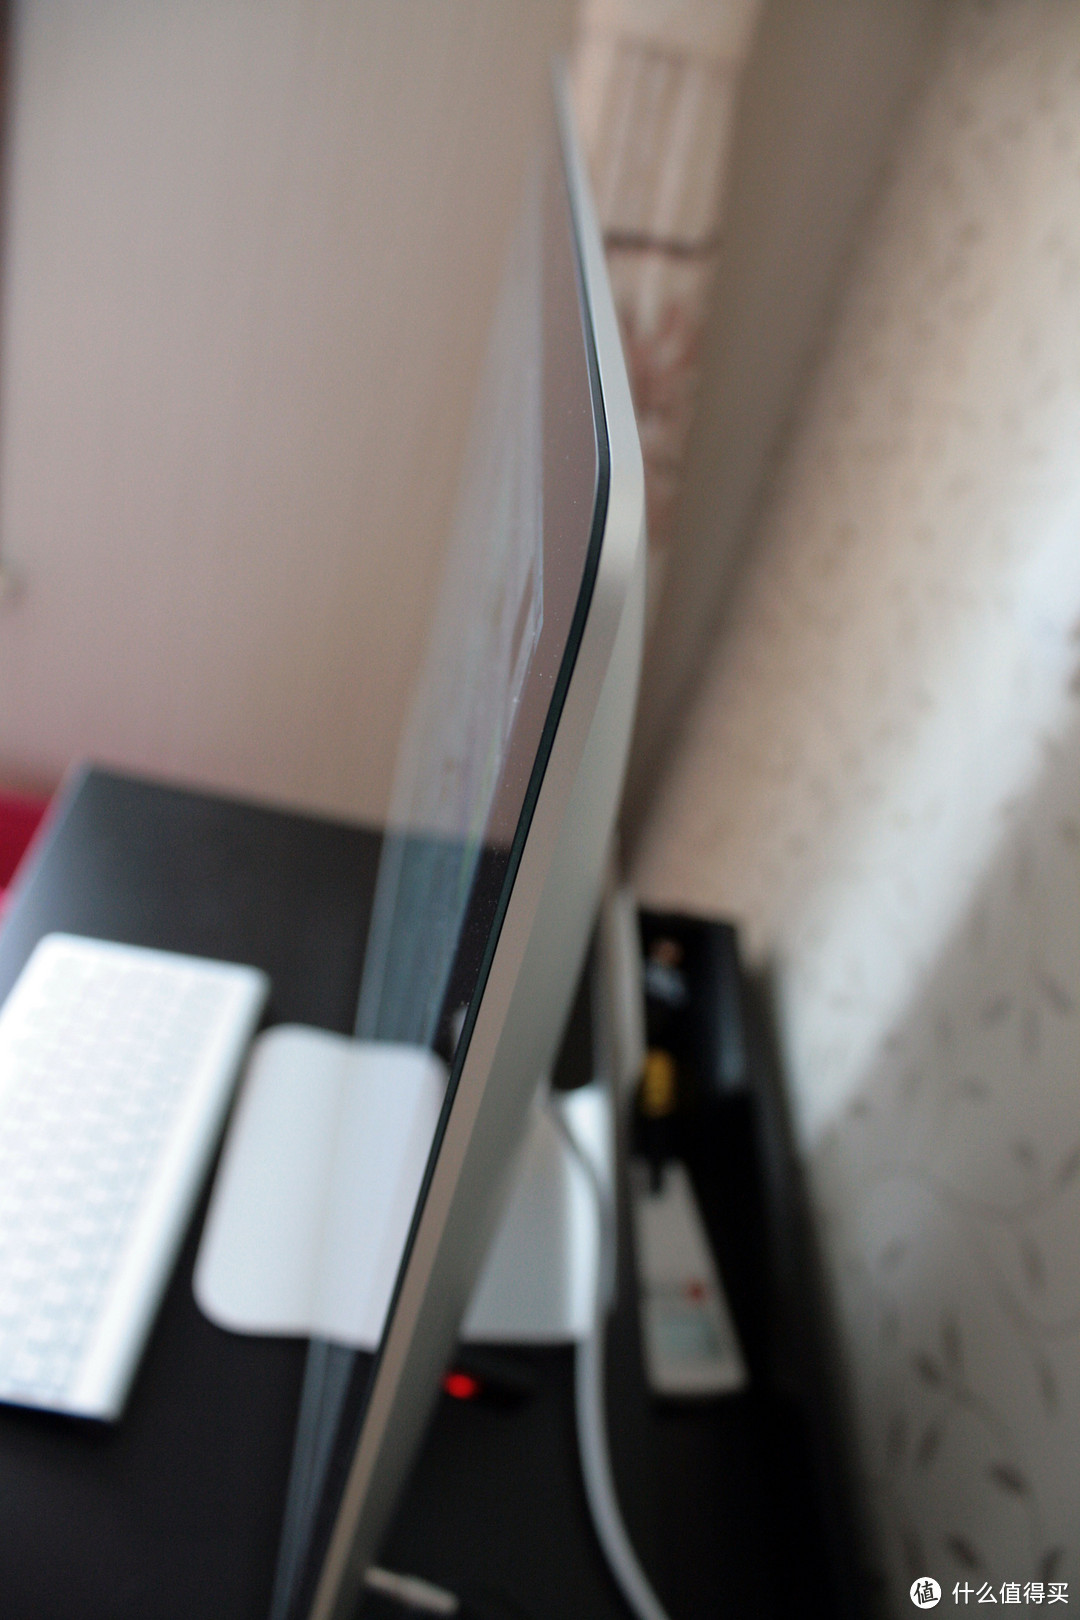 27寸高配 iMac日本亚马逊海淘成功，多图。。很多图。。挺多图的。。